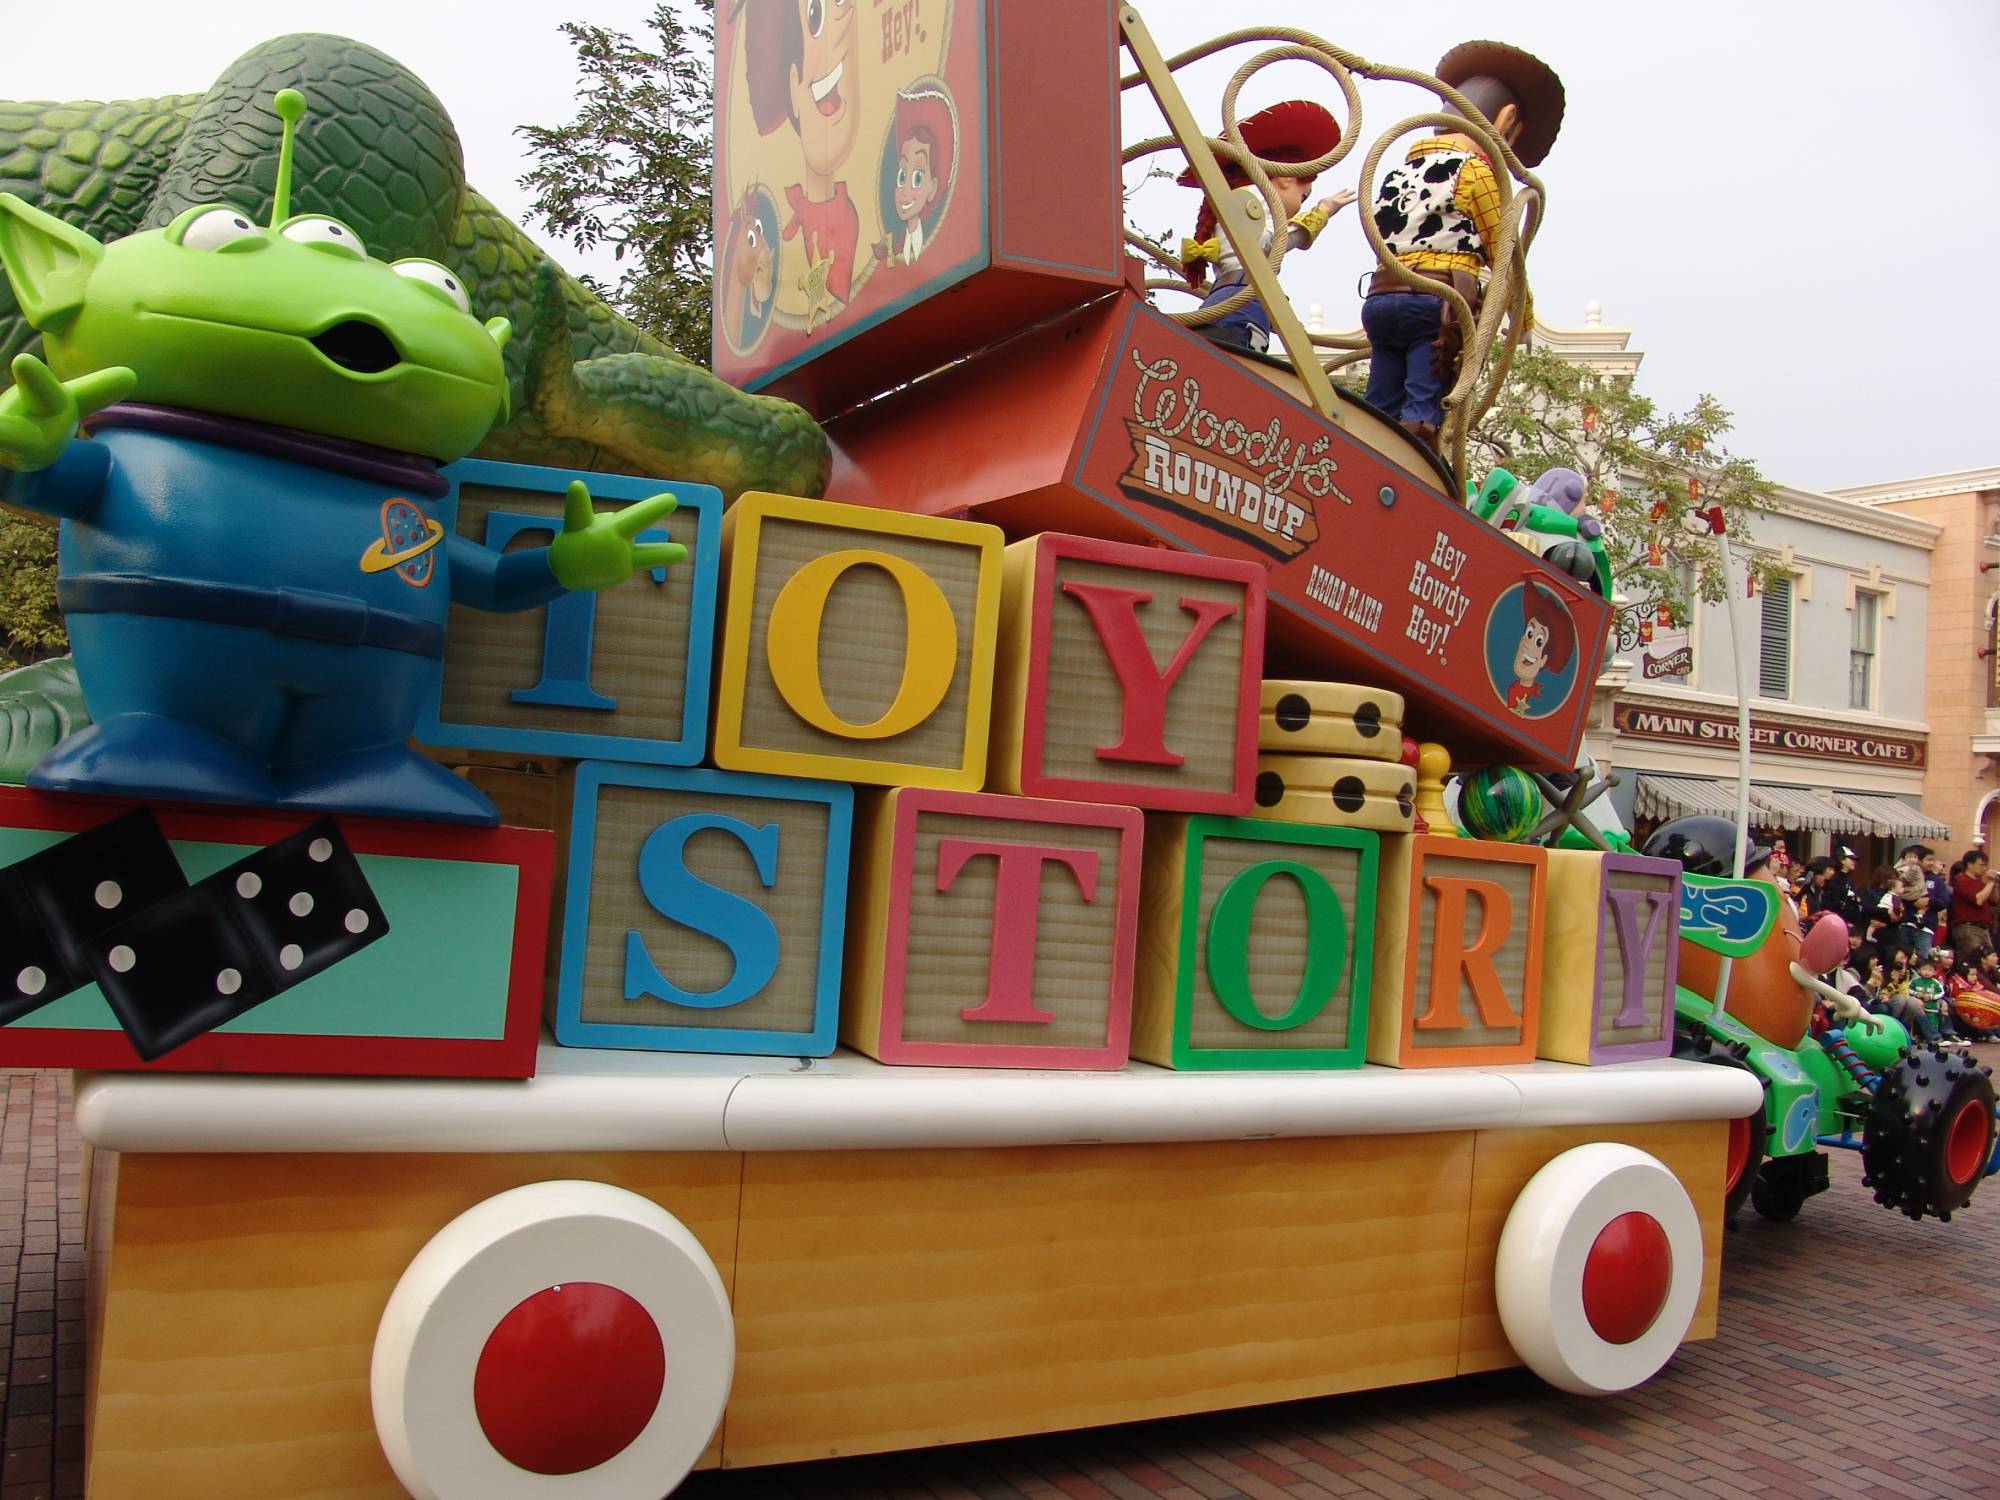 Hong Kong Disneyland - parade